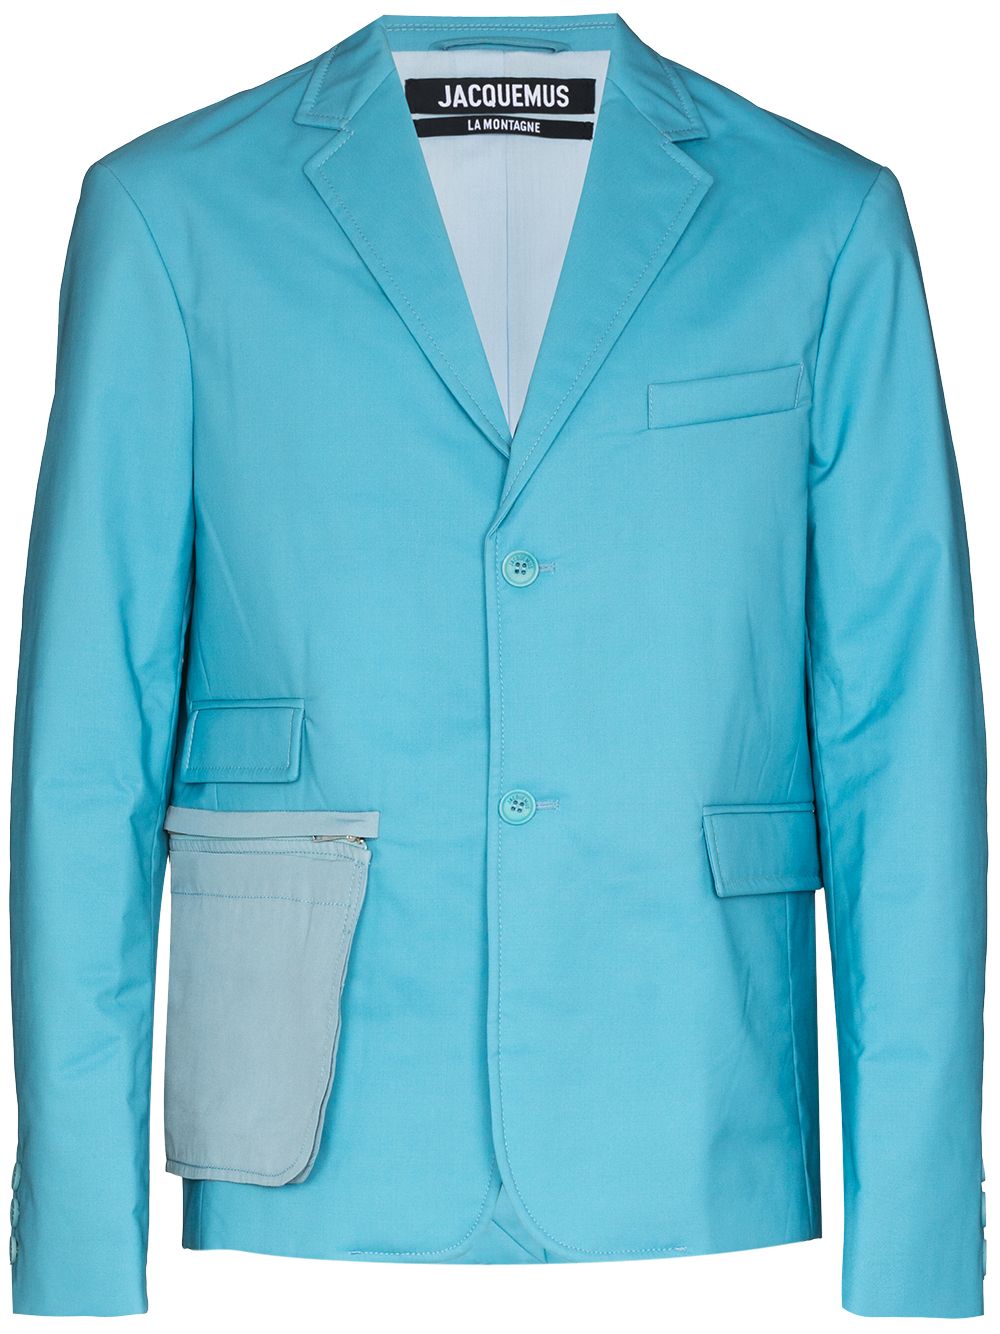 Jacquemus La veste Mouri quilted suit jacket - Blue von Jacquemus